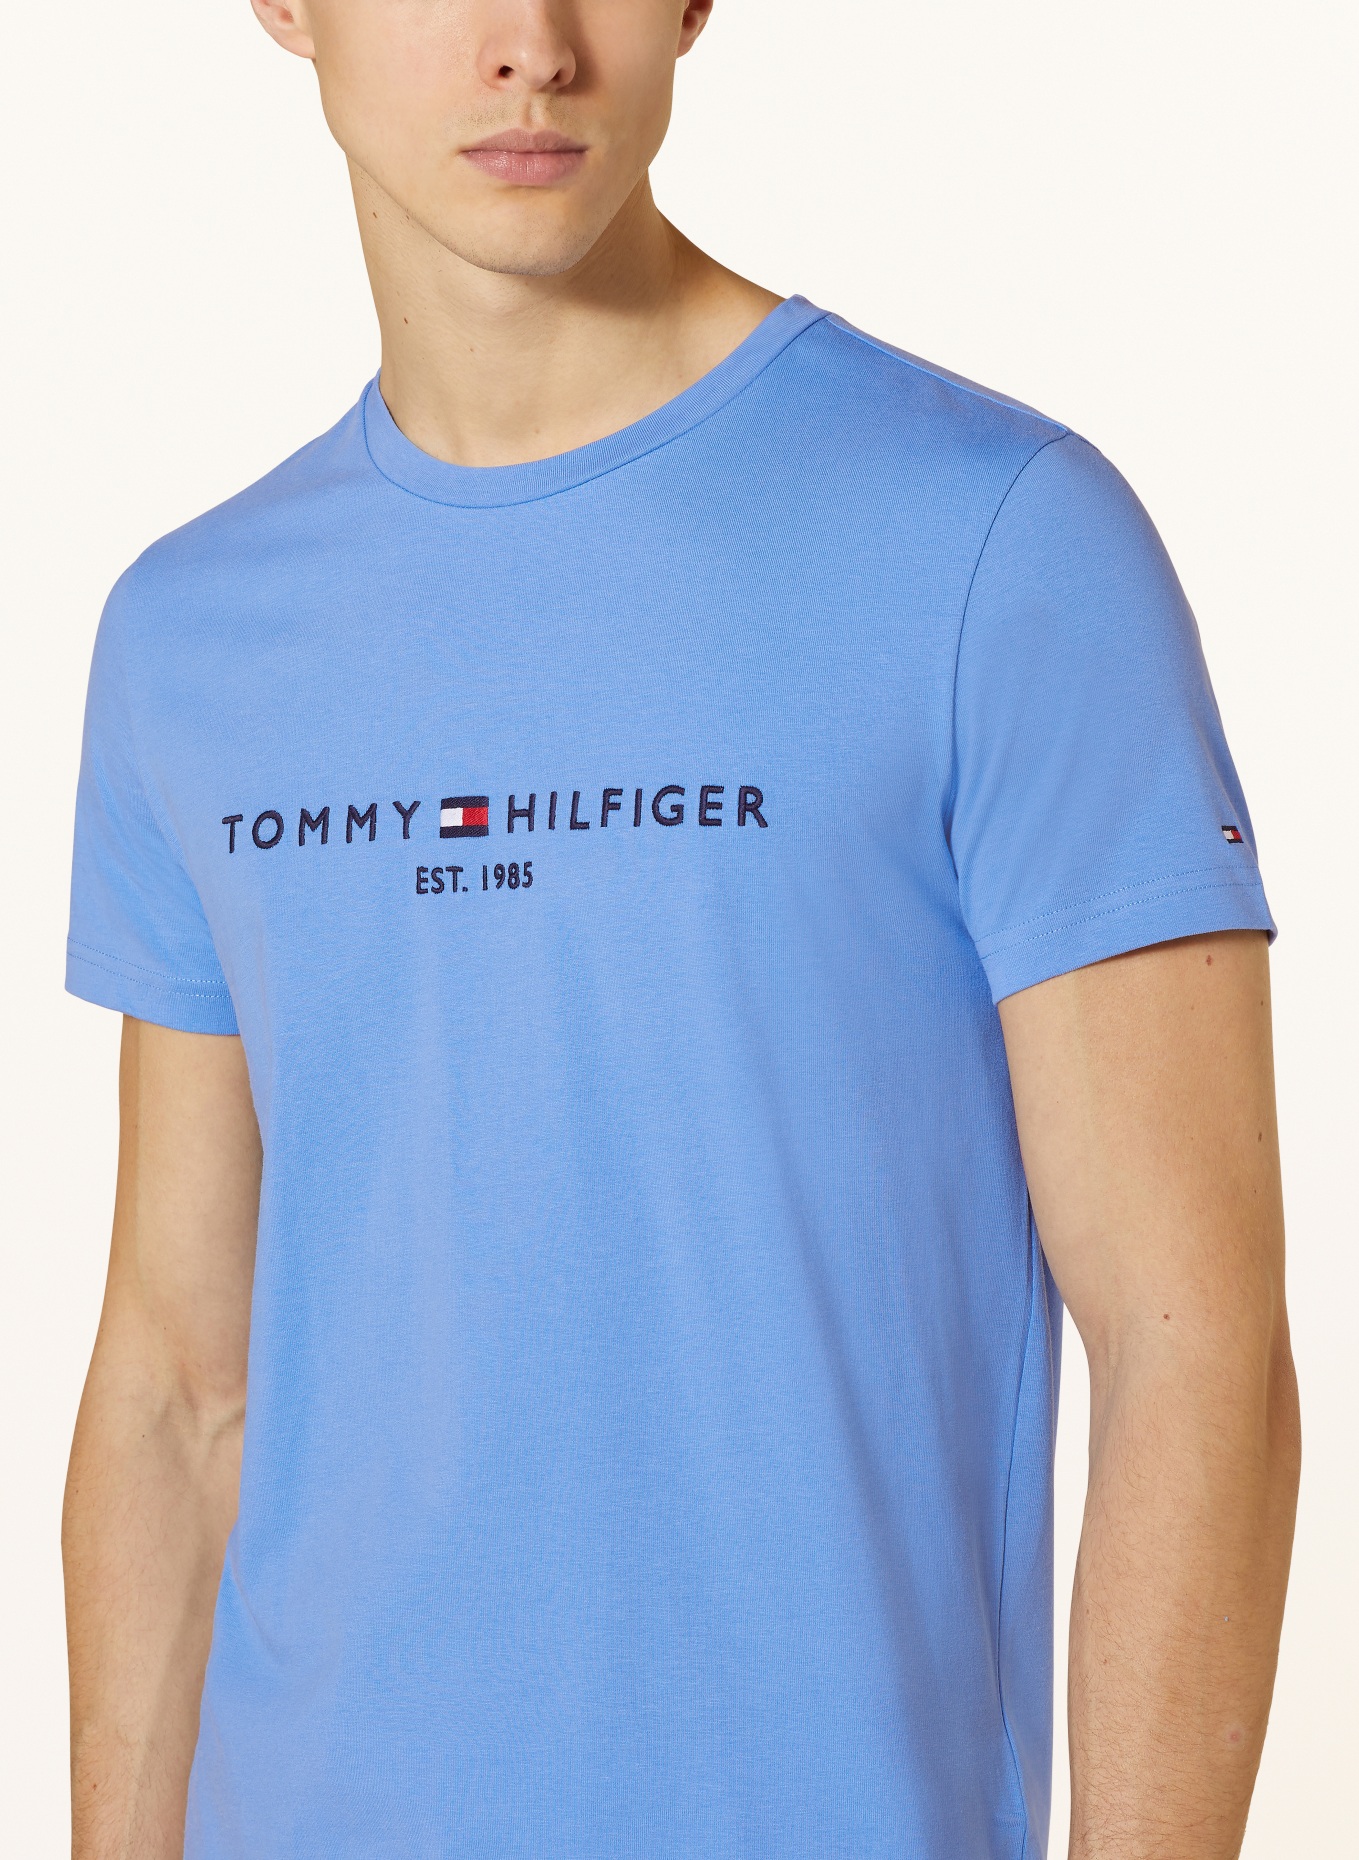 HILFIGER T-Shirt in hellblau TOMMY